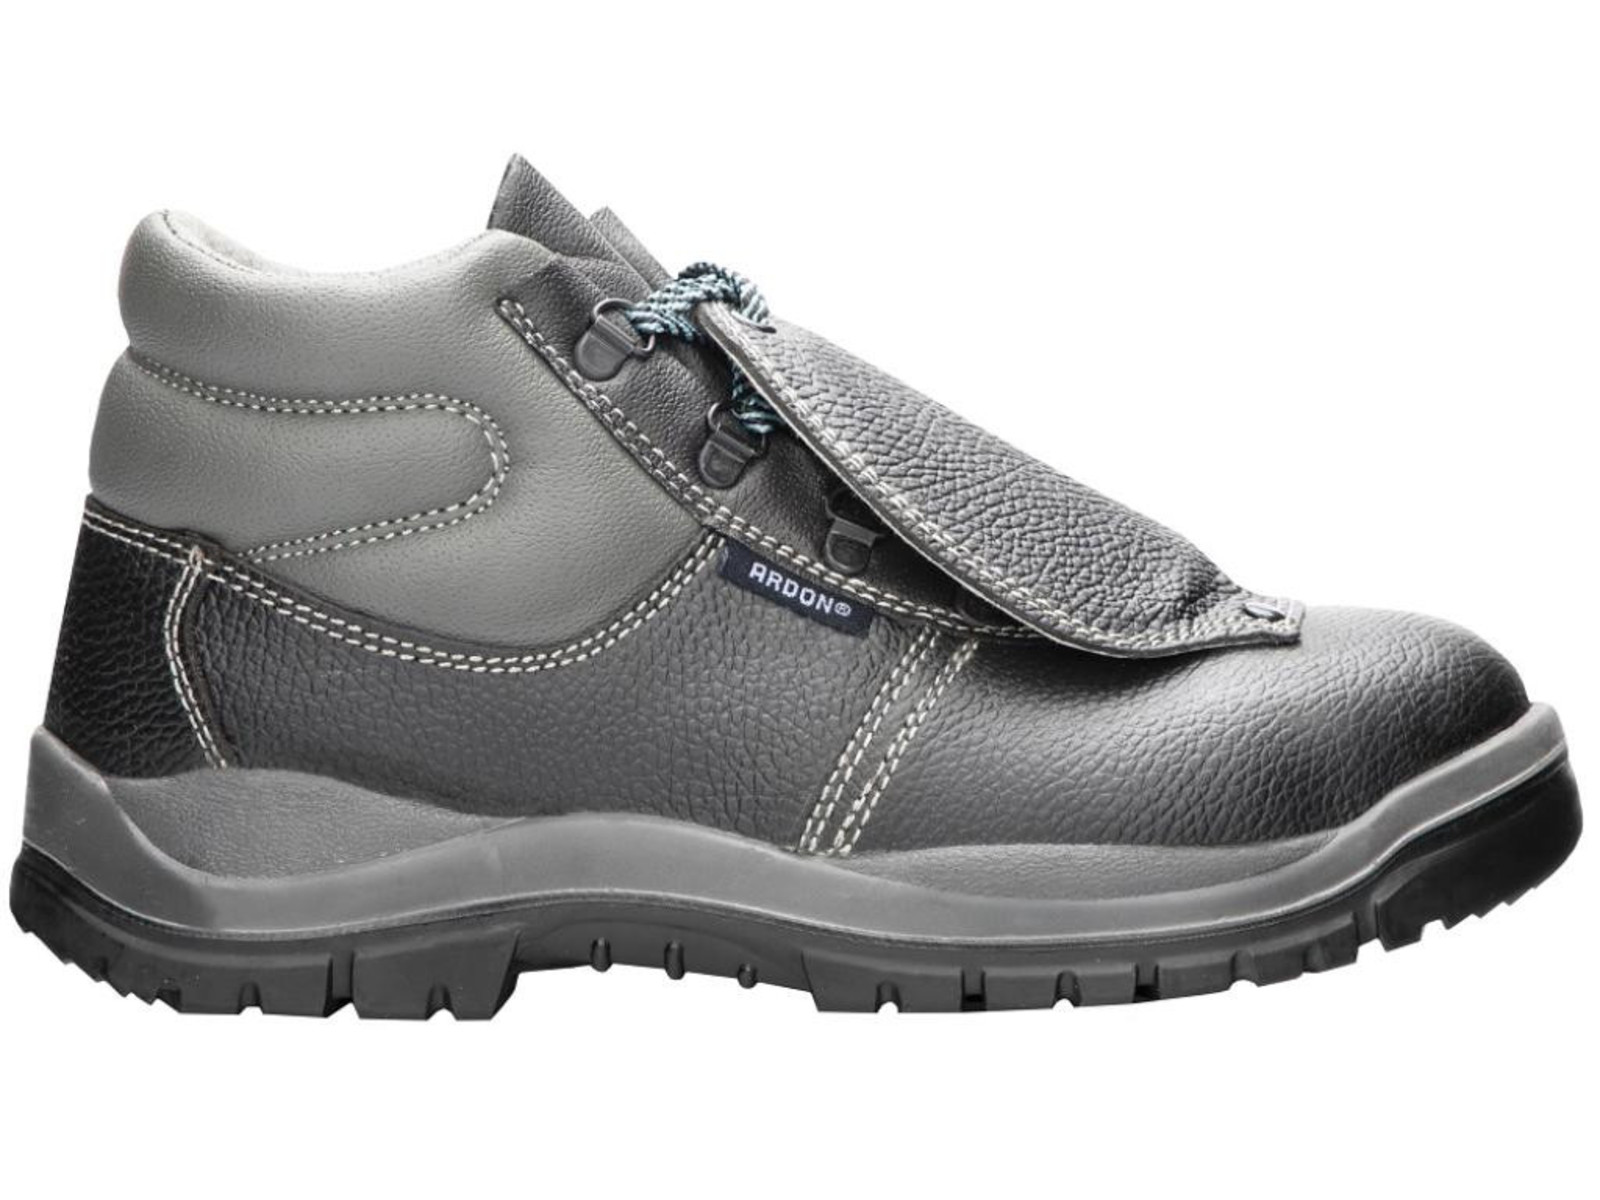 Bezpečnostná obuv ARDON® Integral S1P - veľkosť: 40, farba: sivá/čierna